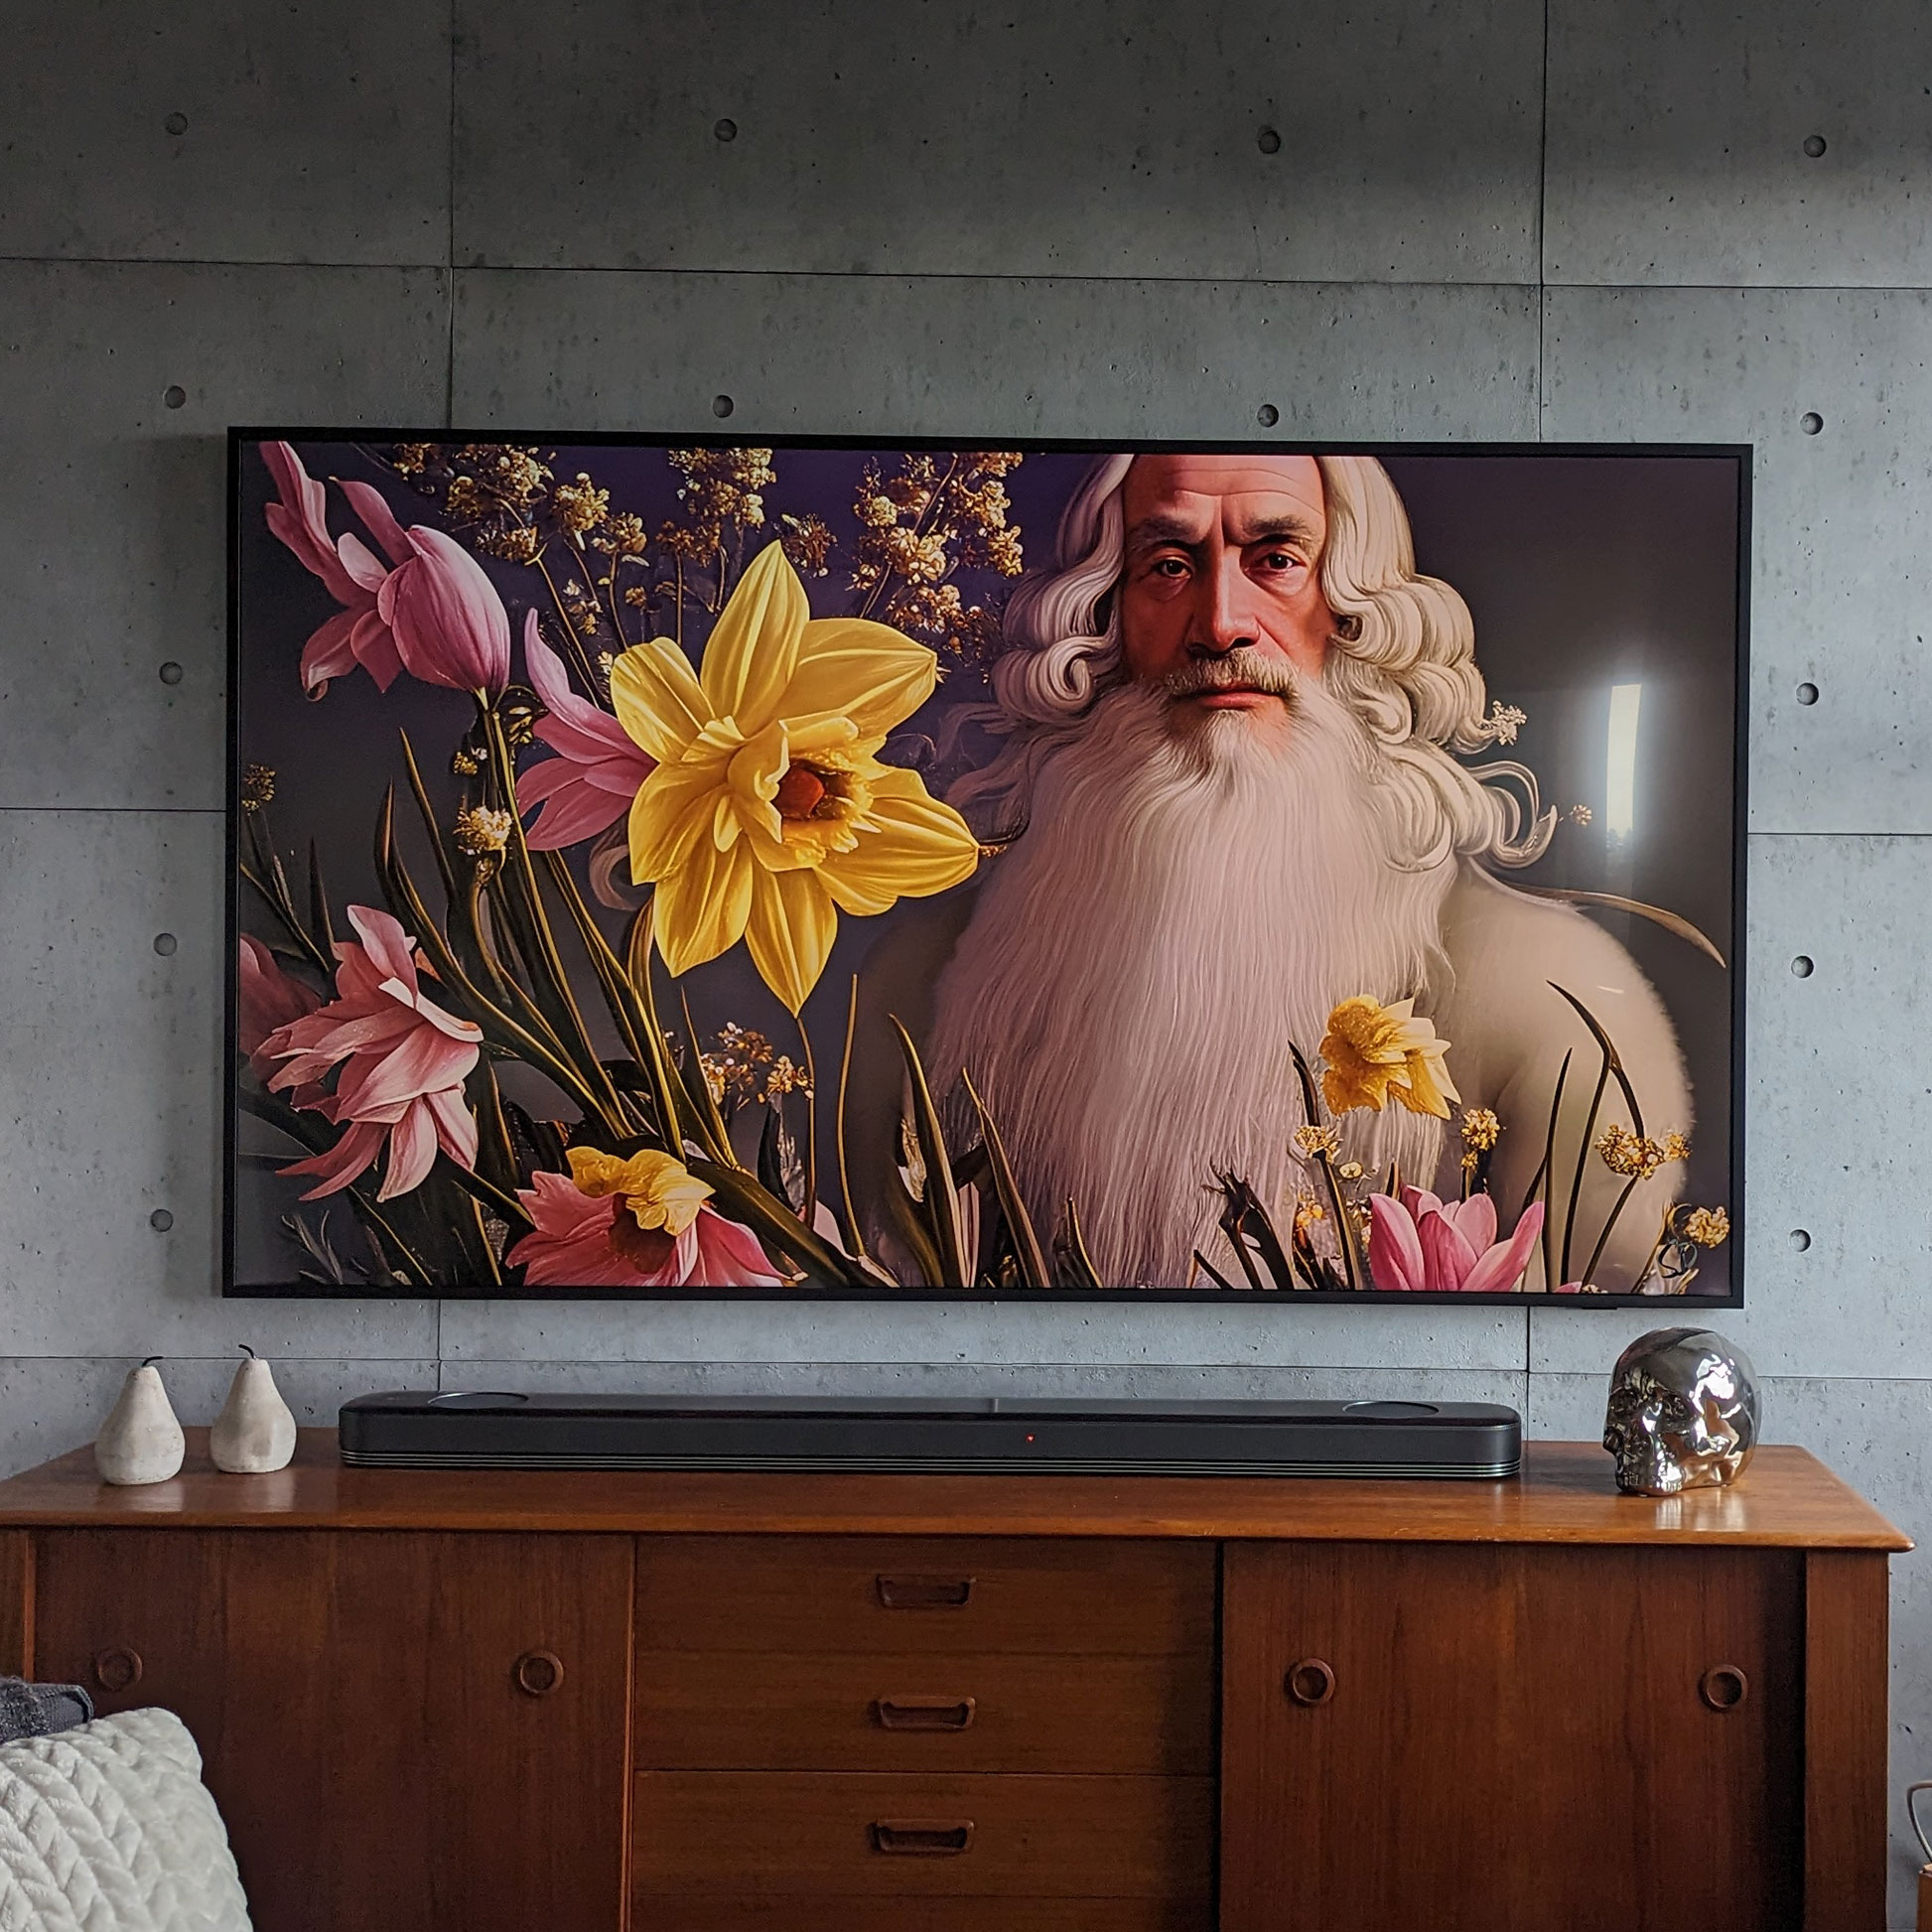 wallpaper-on-frame-tv